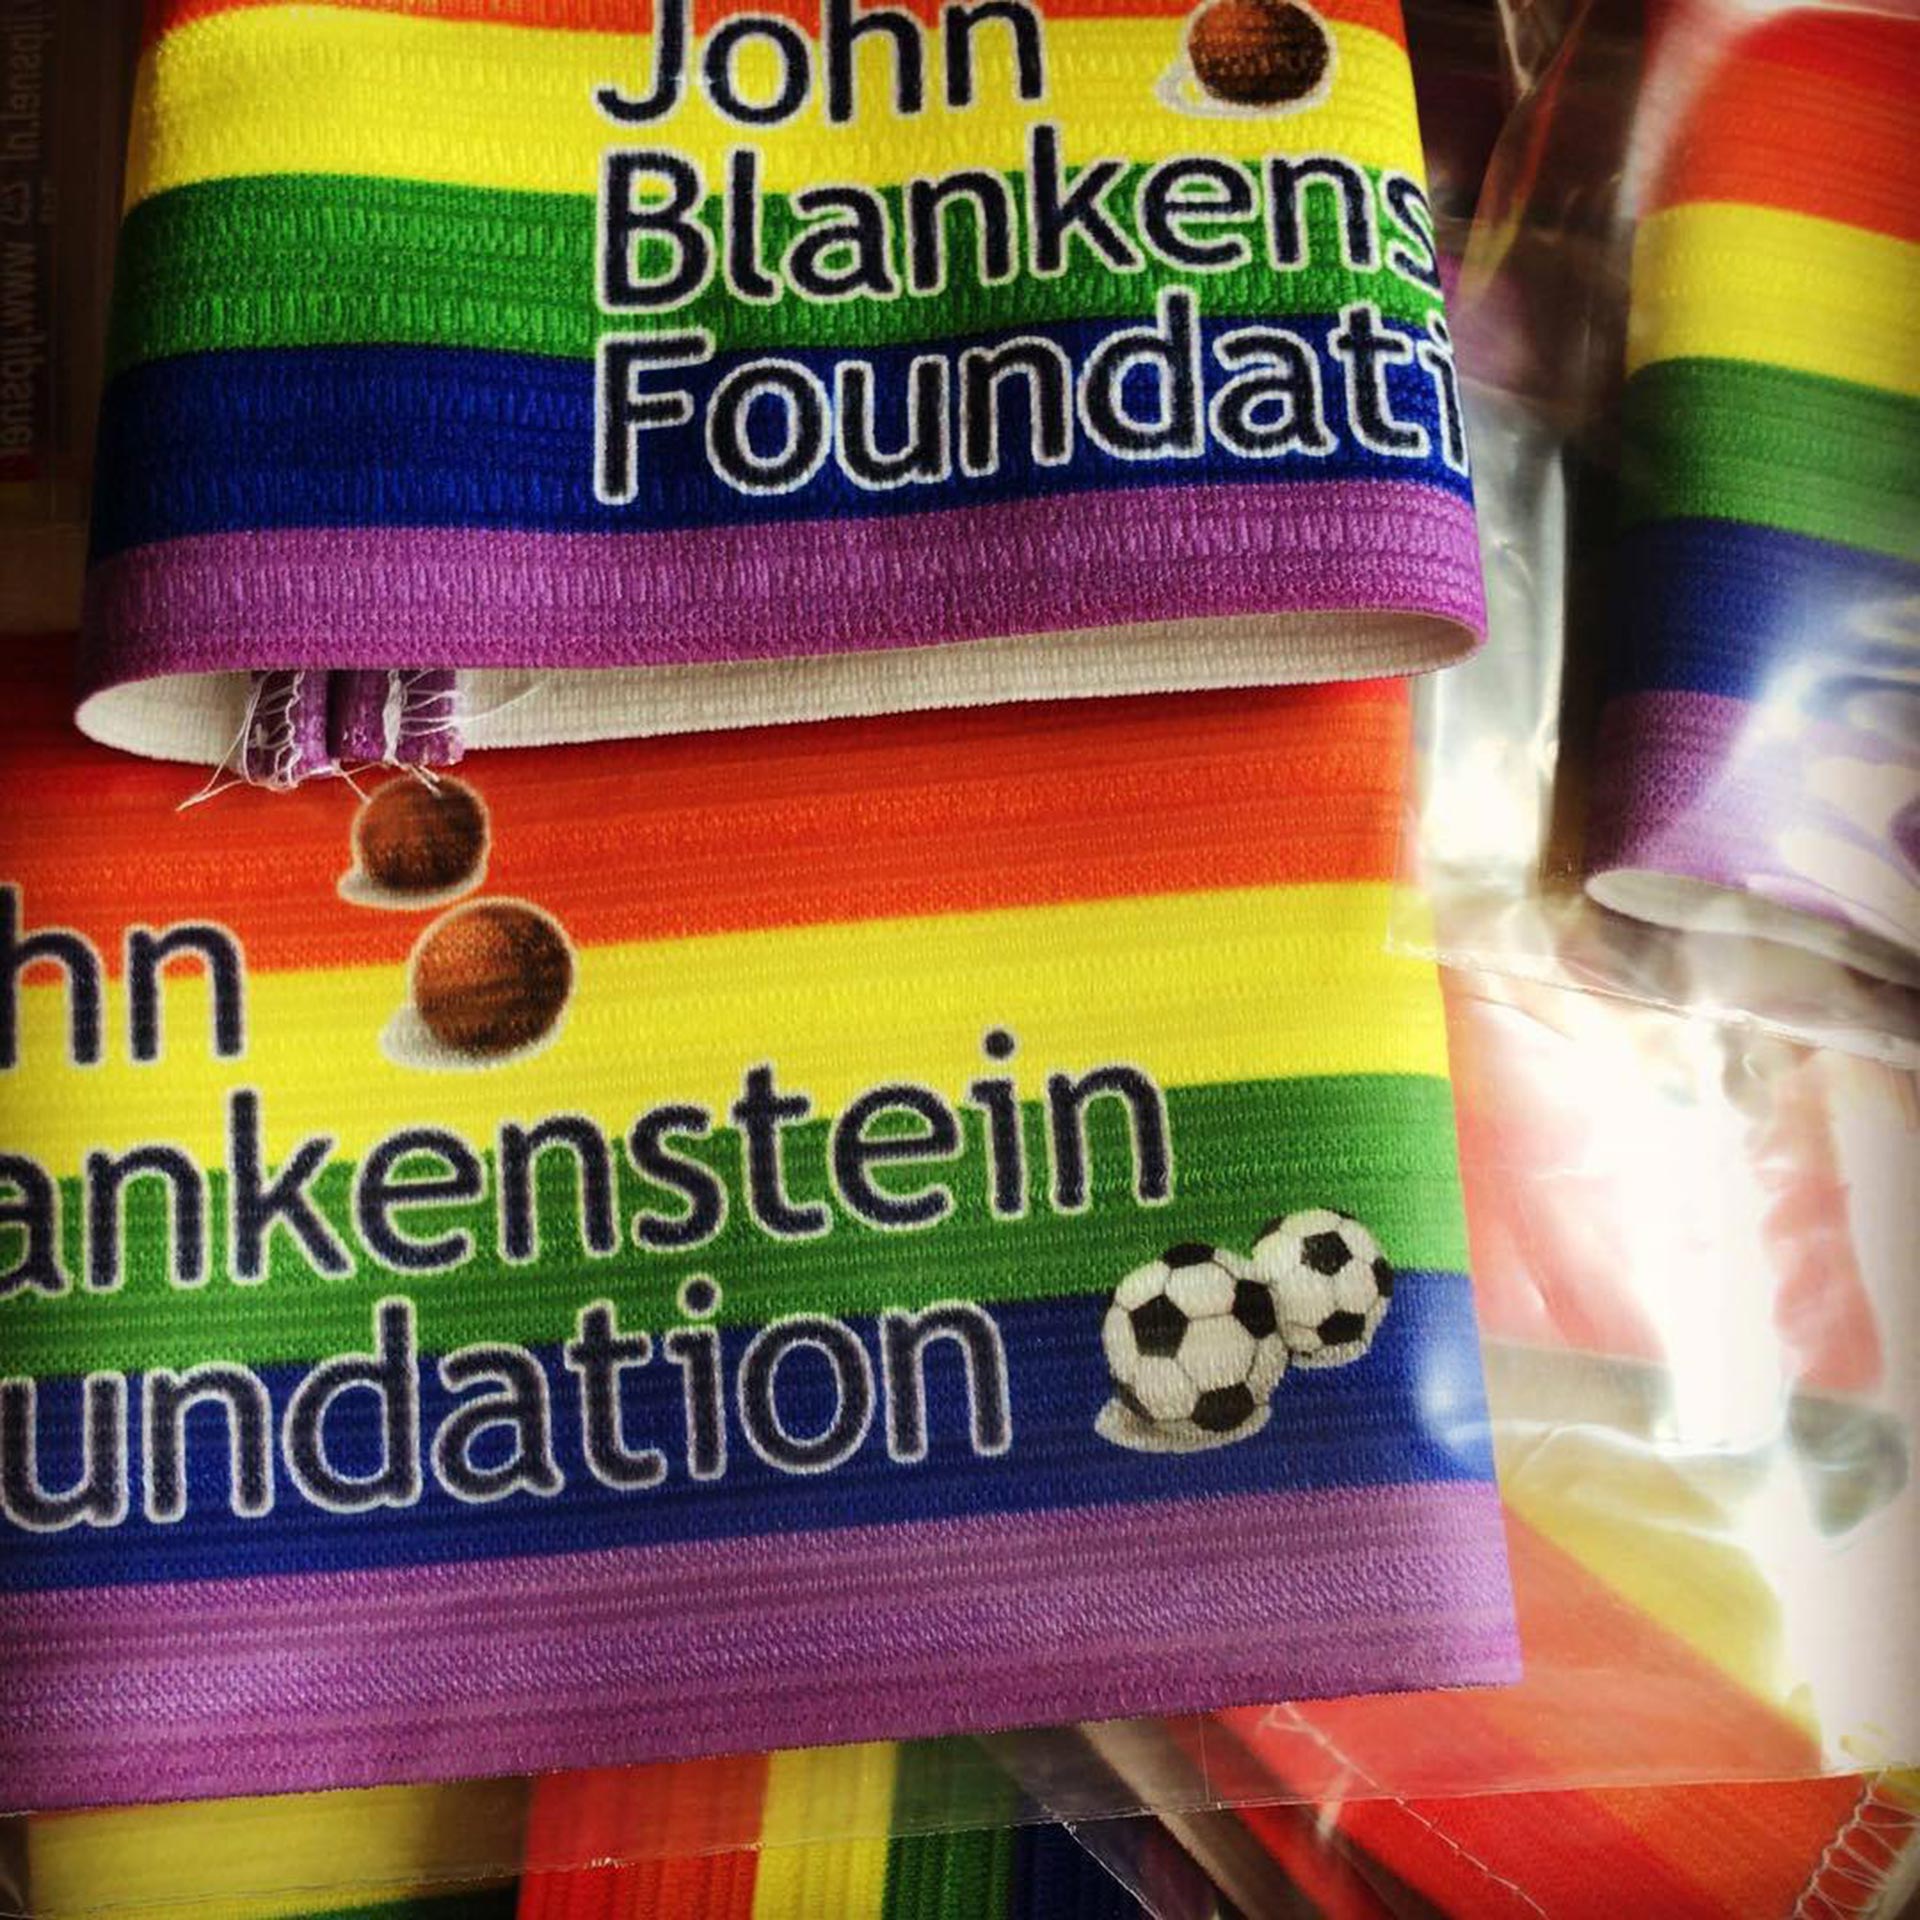 La Fundación promueve el uso de la bandera multicolor en las cintas de capitanes y en otros espacios en los clubes (Facebook John Blankenstein Foundation)